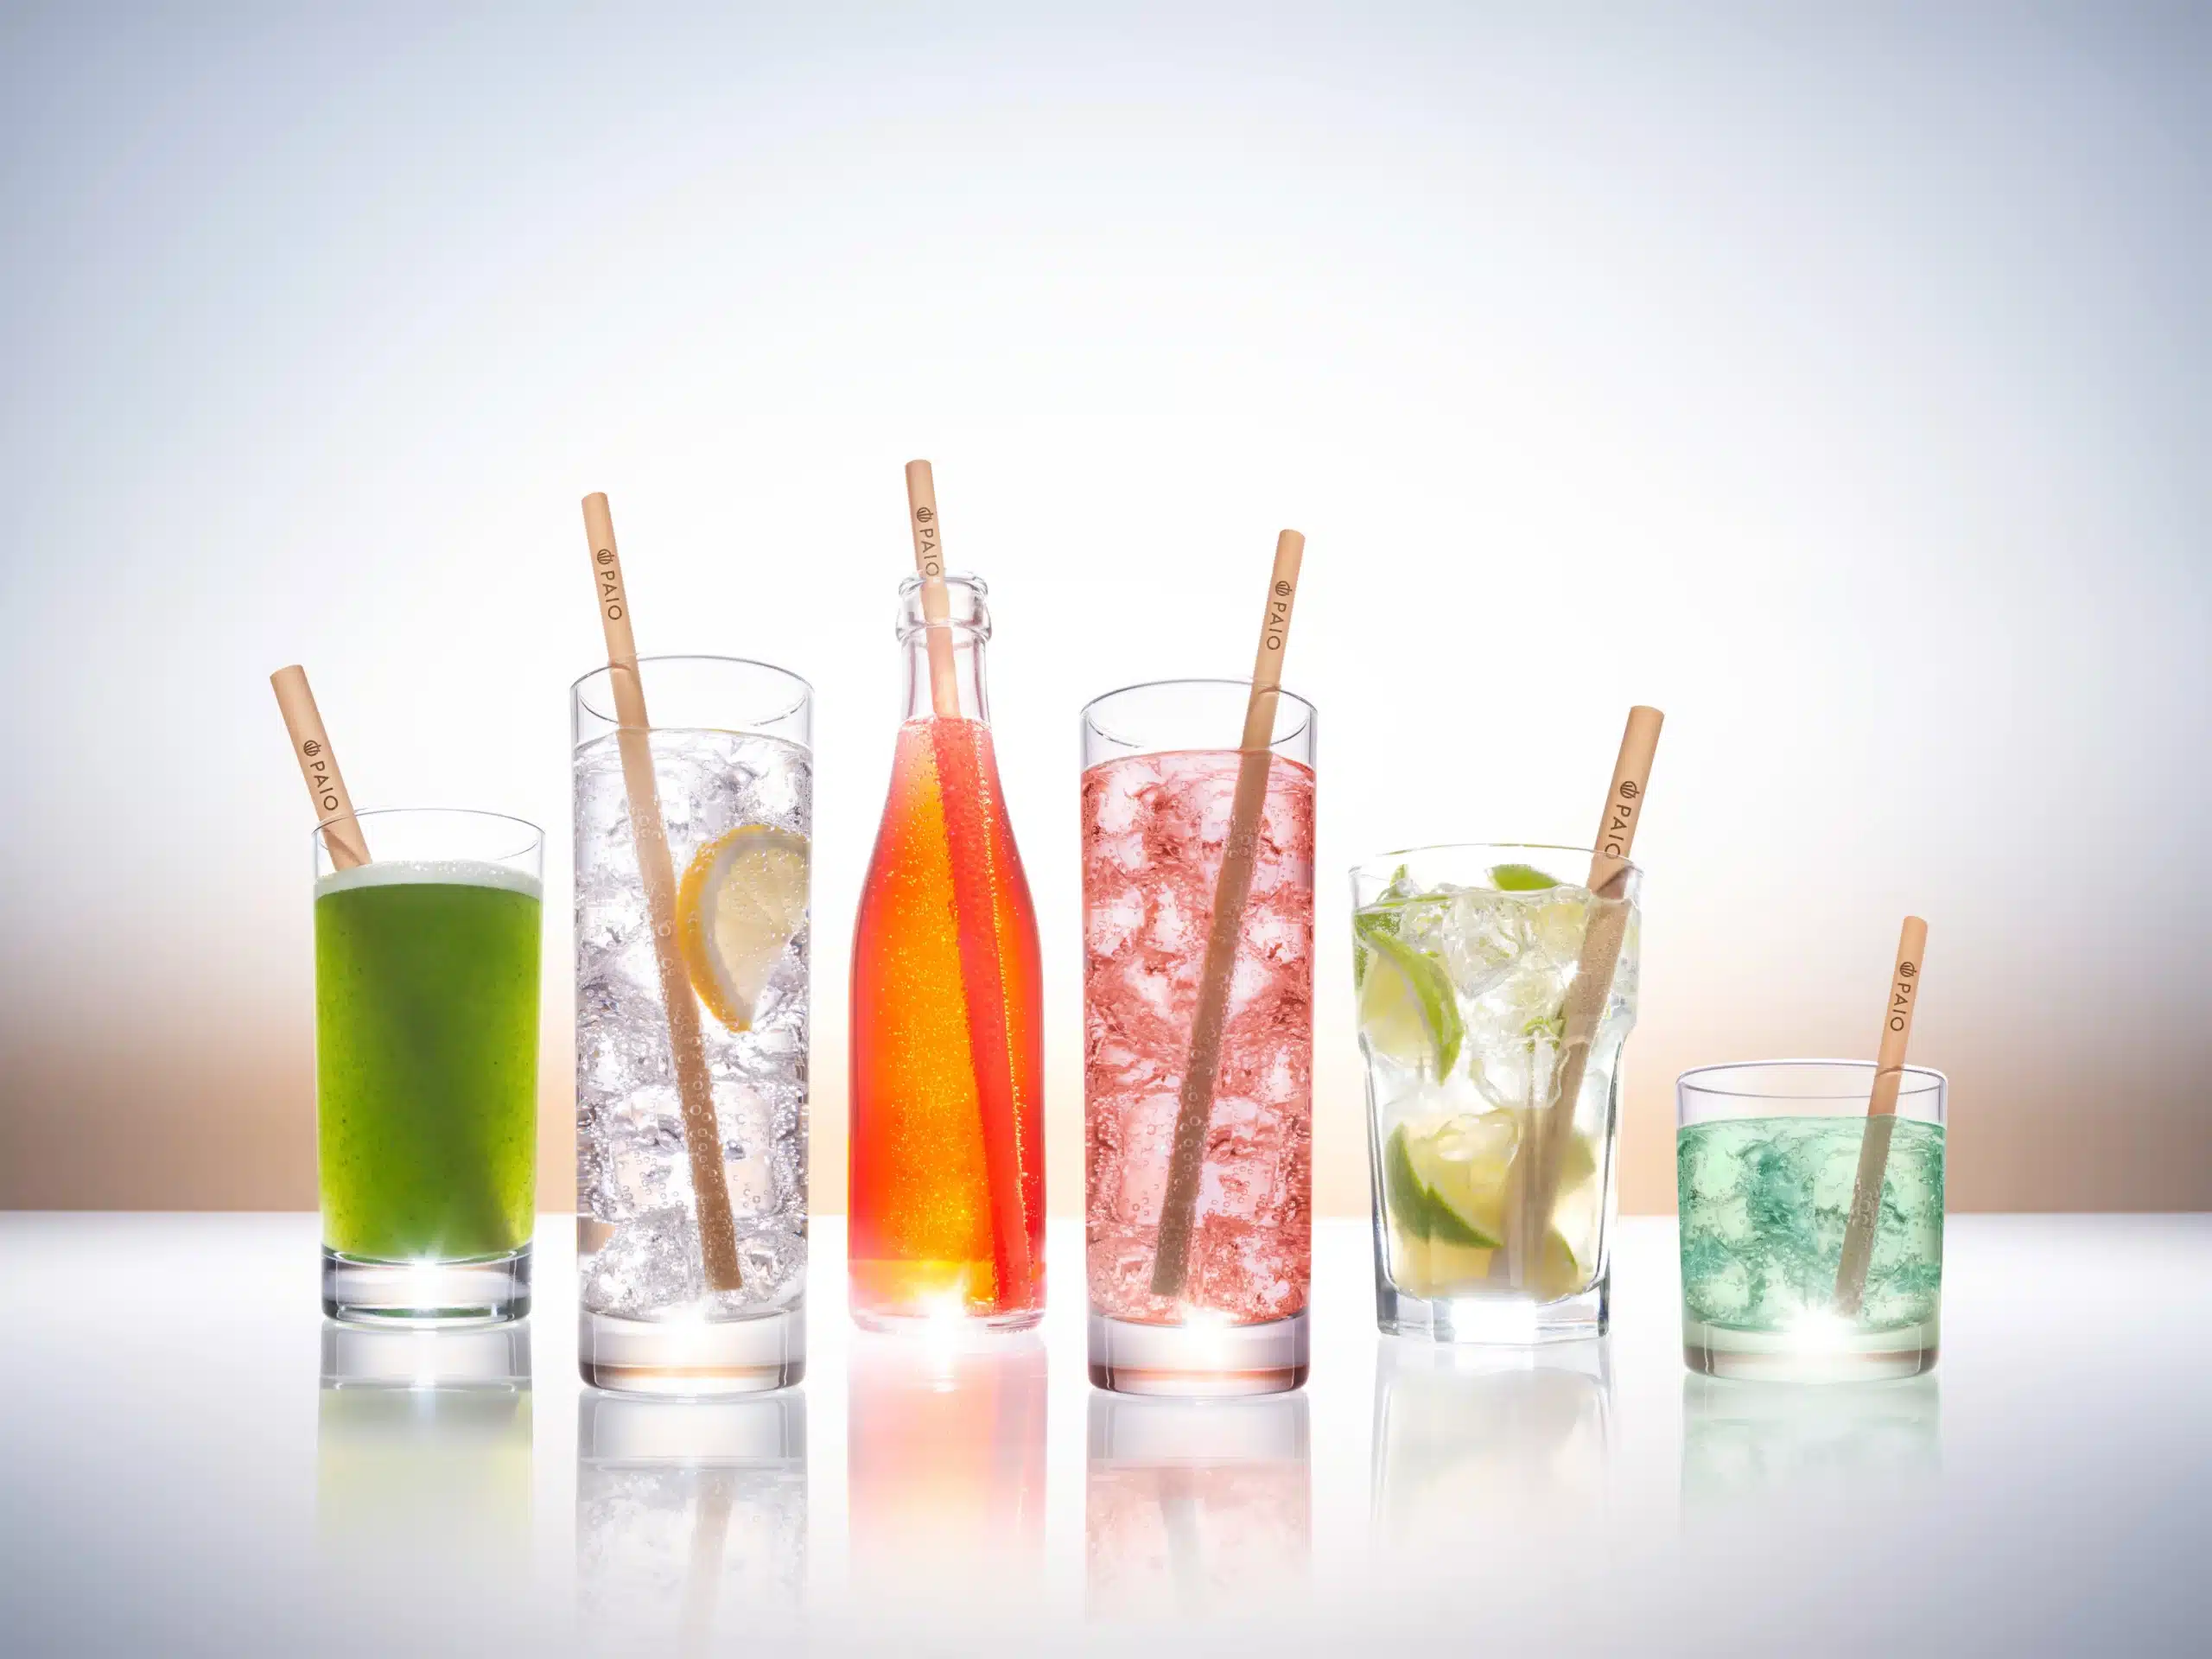 Neu und nachhaltig: Trinkhalme aus Reet  – Geschmacksneutrale, umweltfreundliche Alternative zu Plastikstrohhalmen